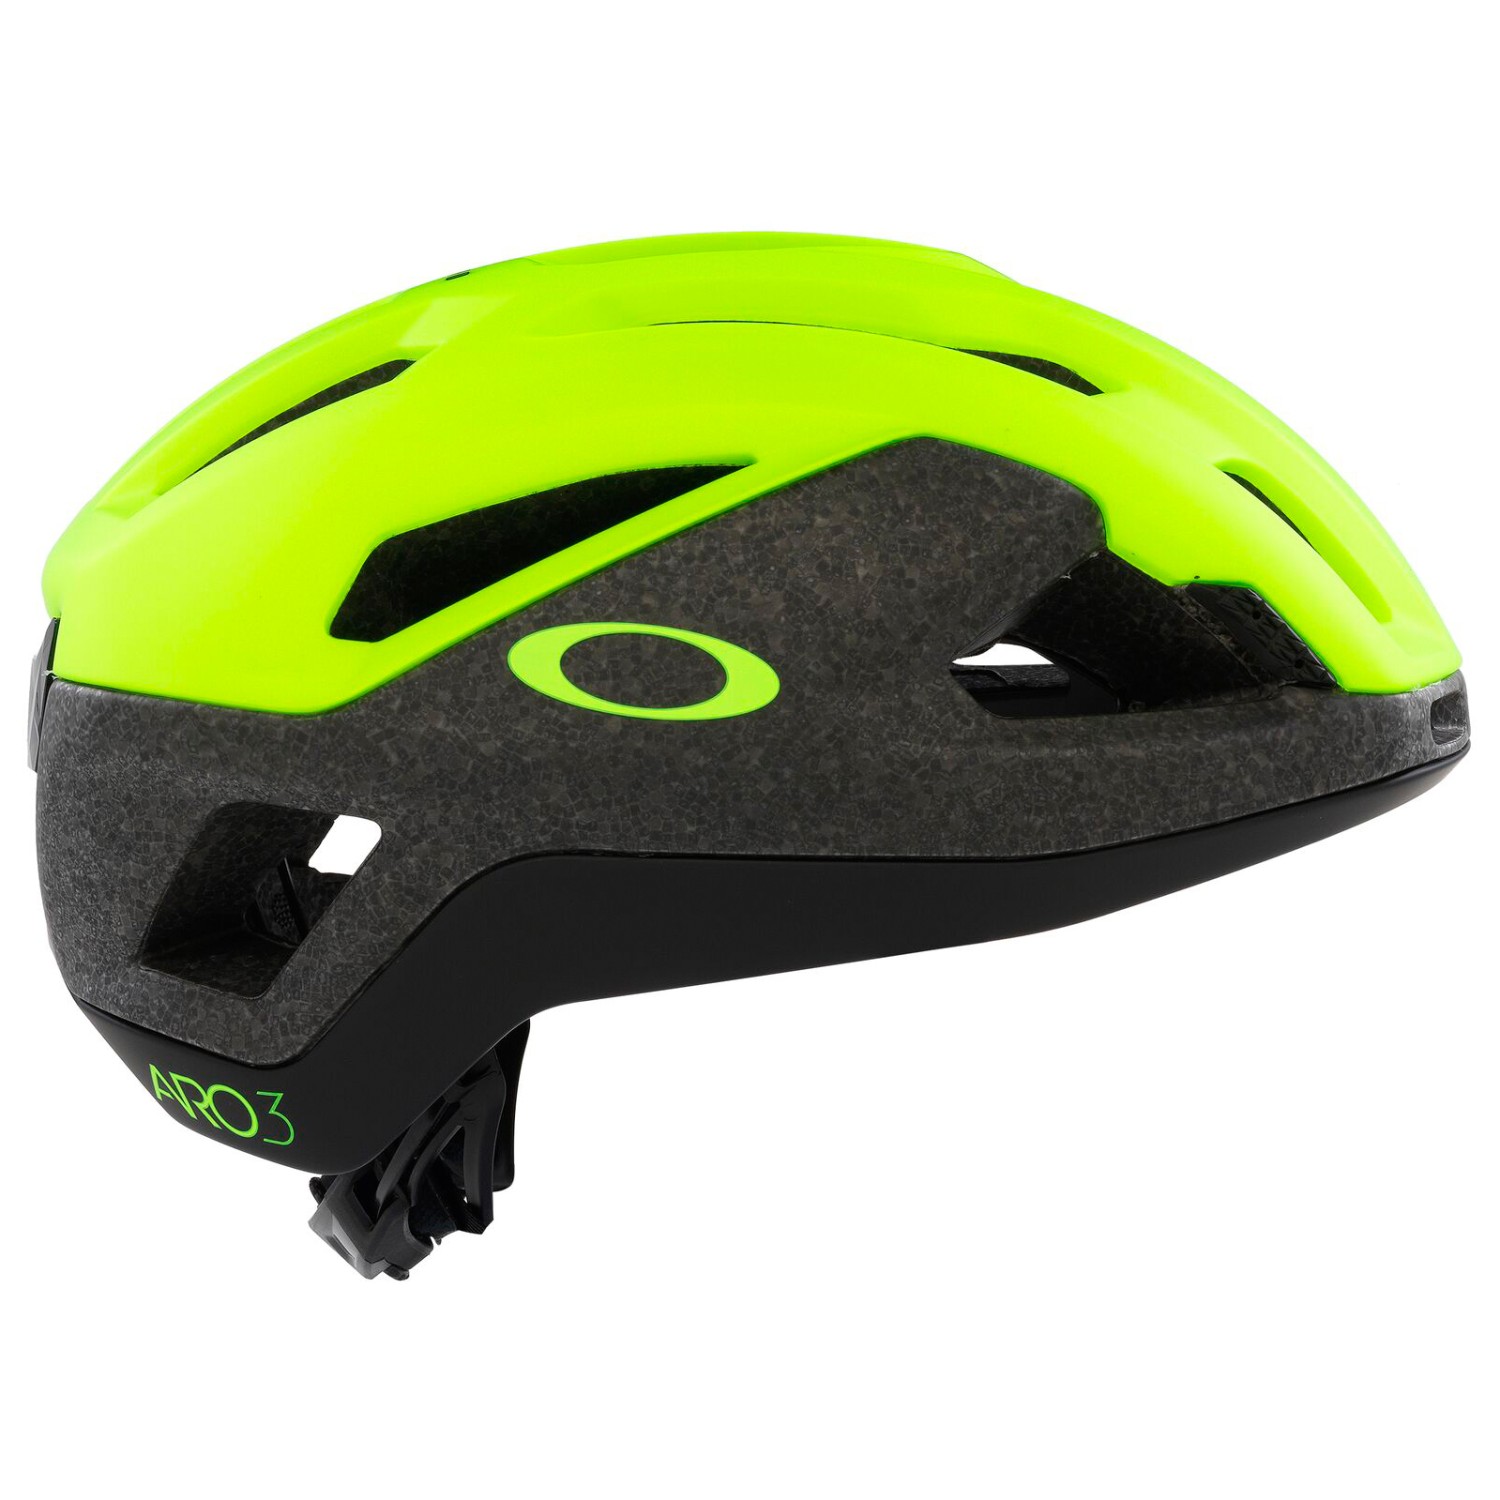 Велосипедный шлем Oakley ARO3 Endurance, цвет Matte Retina Burn